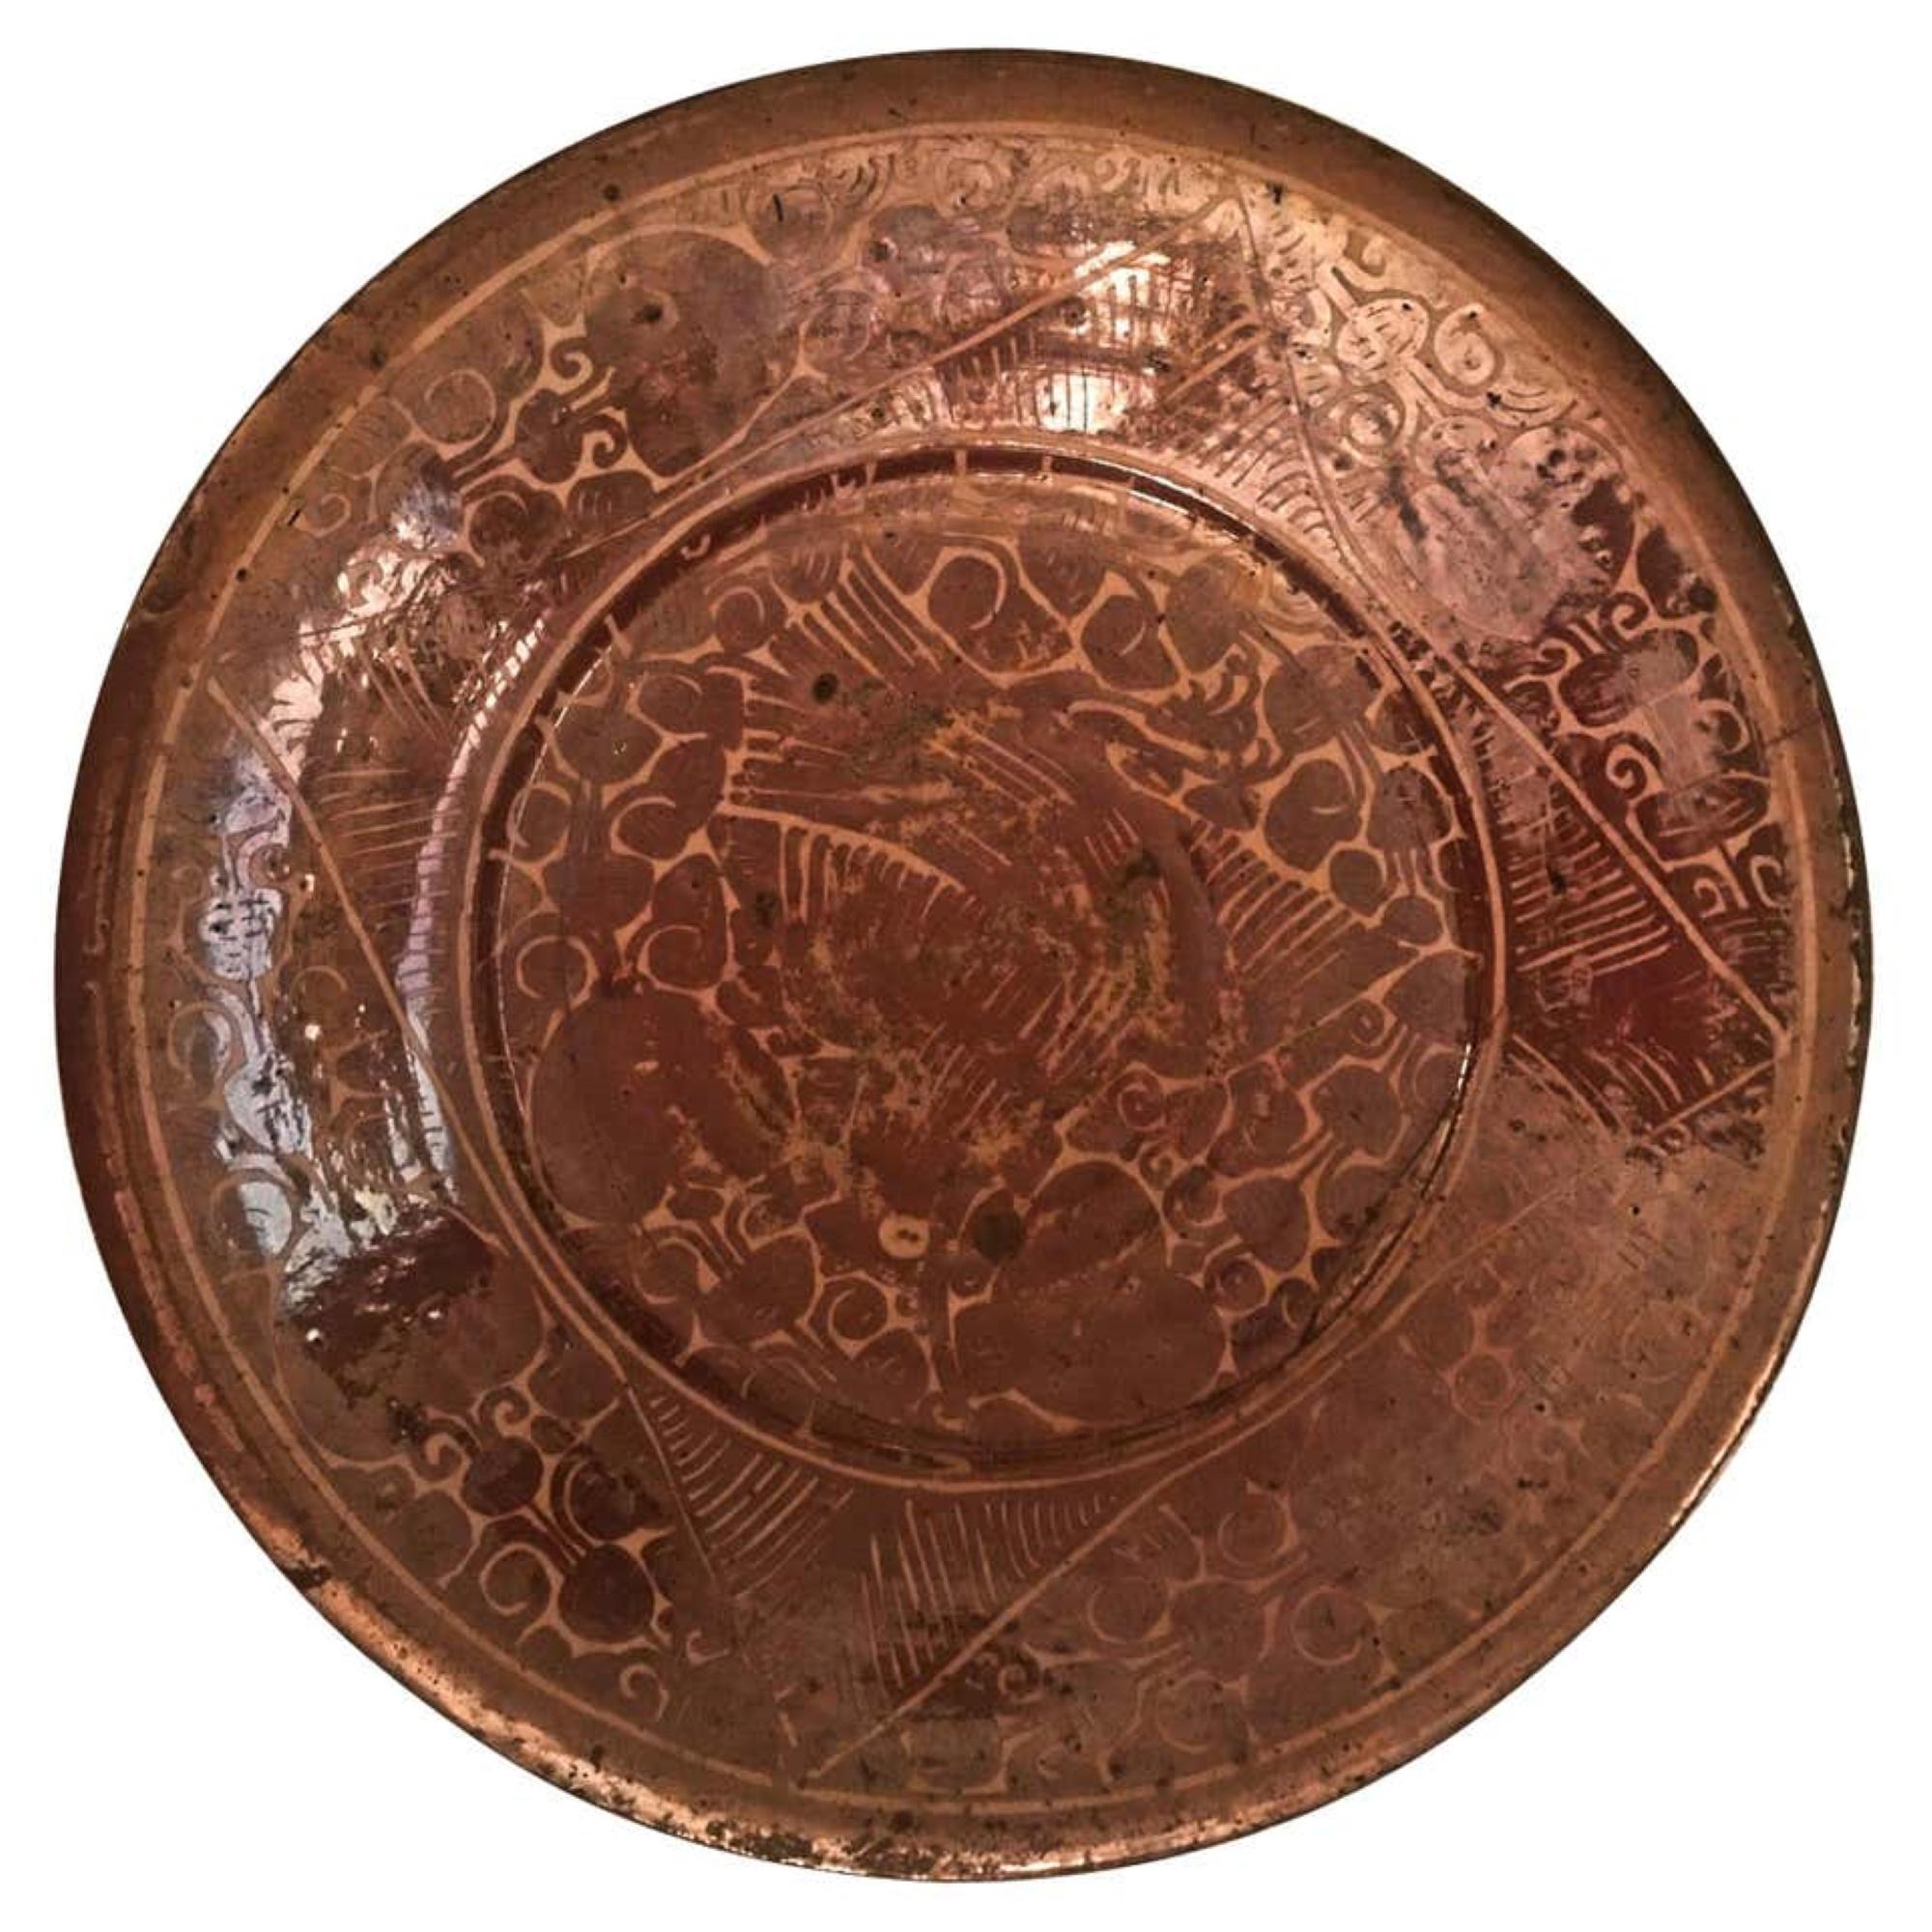 Ancien bol lustré rare de Kashan 12ème siècle art de la poterie islamique.

Ce bol lustré magnifiquement décoré et bien entretenu est l'un des rares exemples encore existants. Il a été fabriqué à Kashan au 12e-début du 13e siècle, période